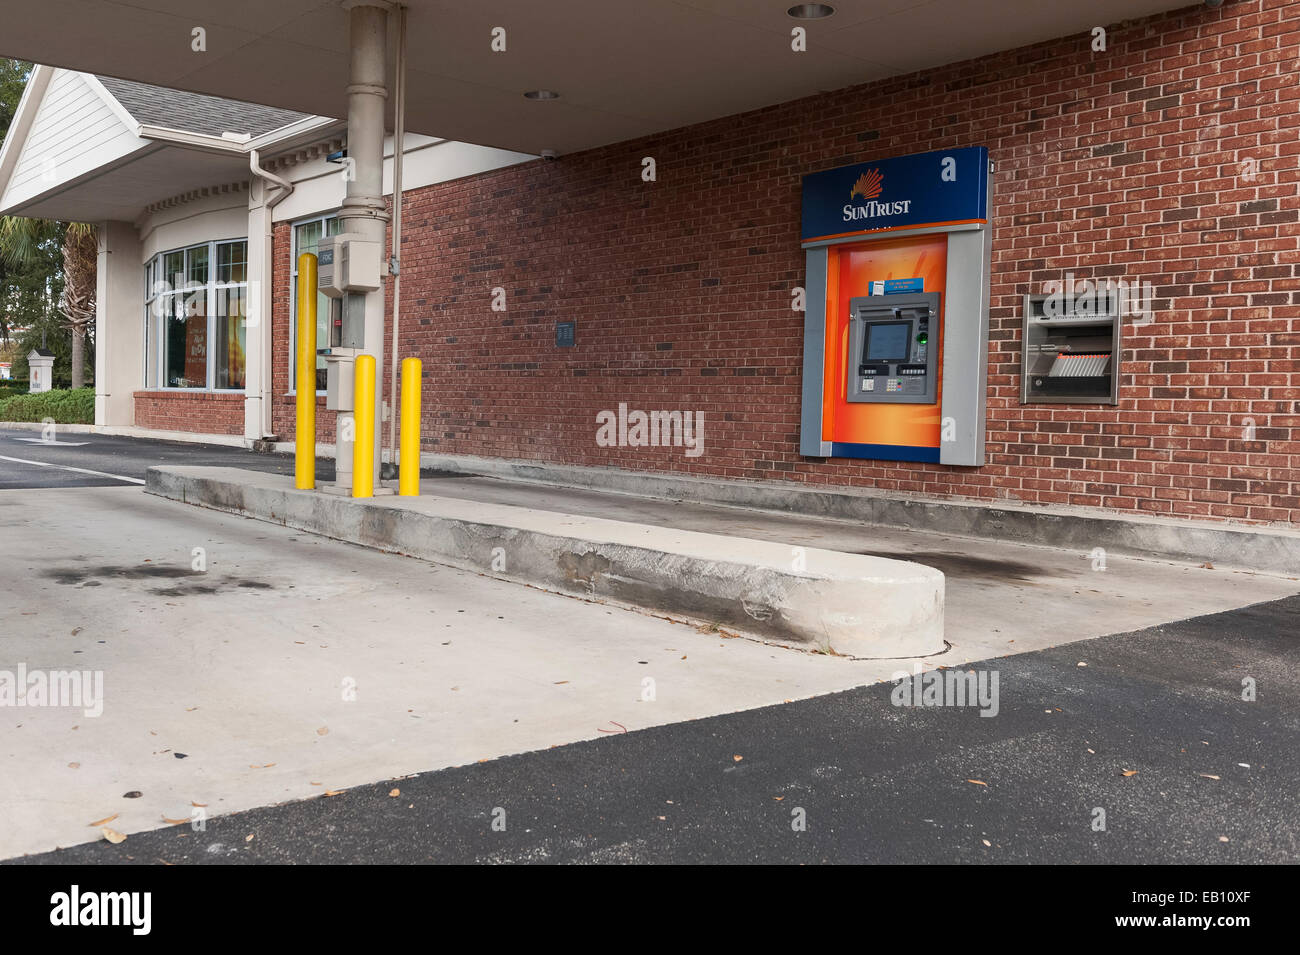 Sun Trust ATM überprüfen Einlösung Kaution Drive thru Banking befindet sich in Zentral-Florida-USA Stockfoto